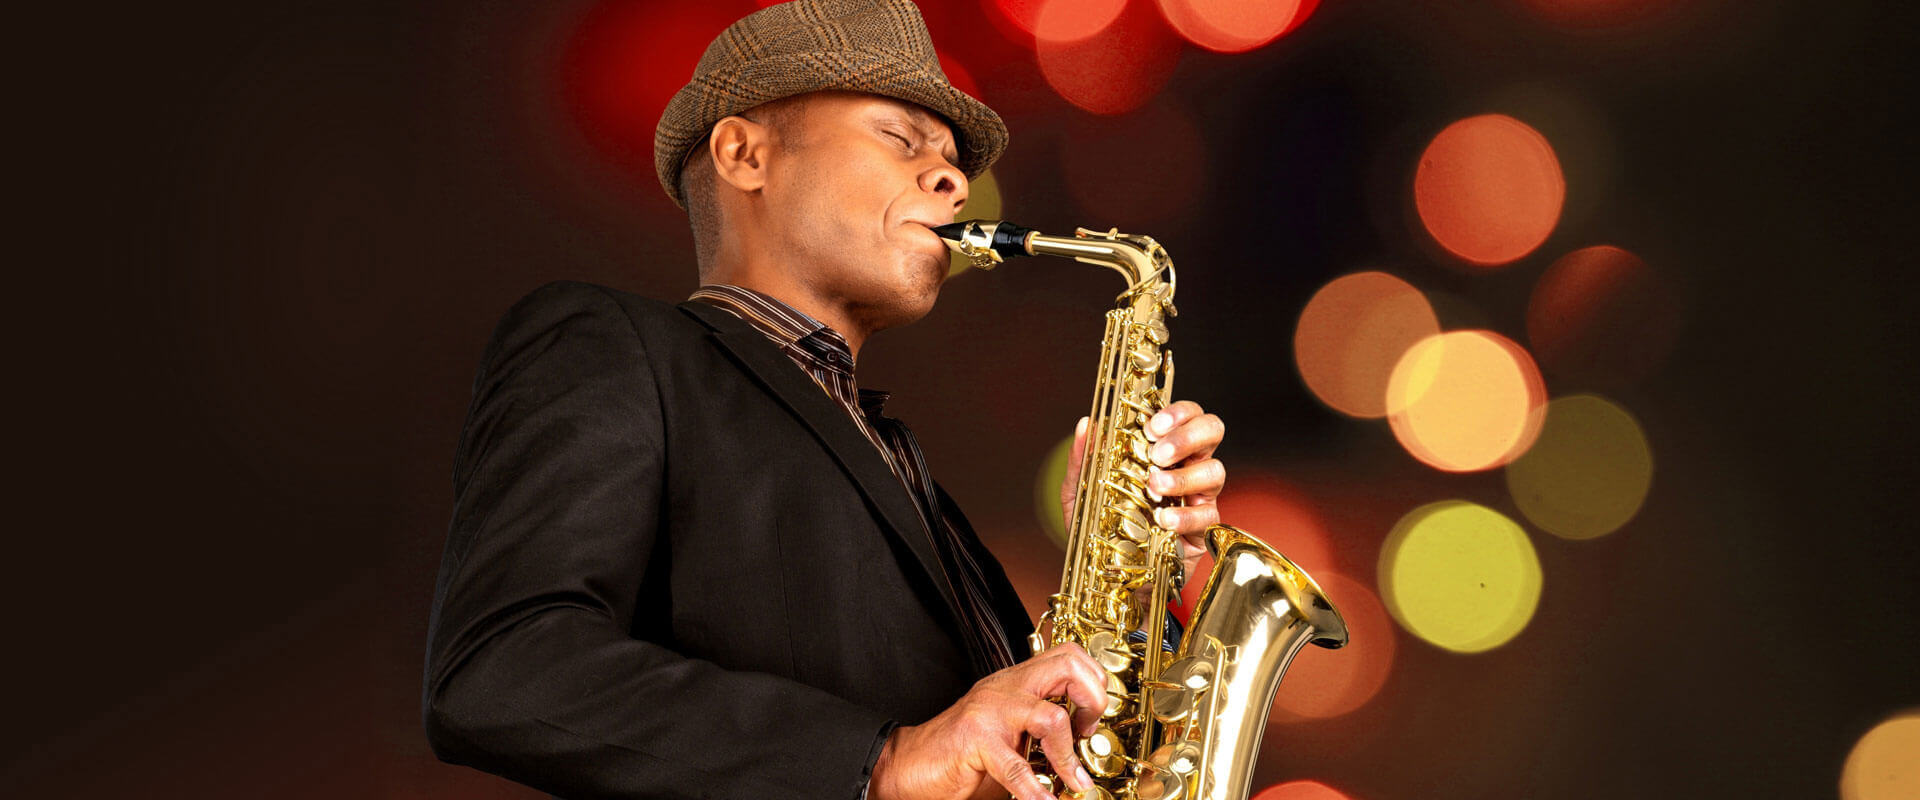 Saxophone Lessons Dunbridge, OH